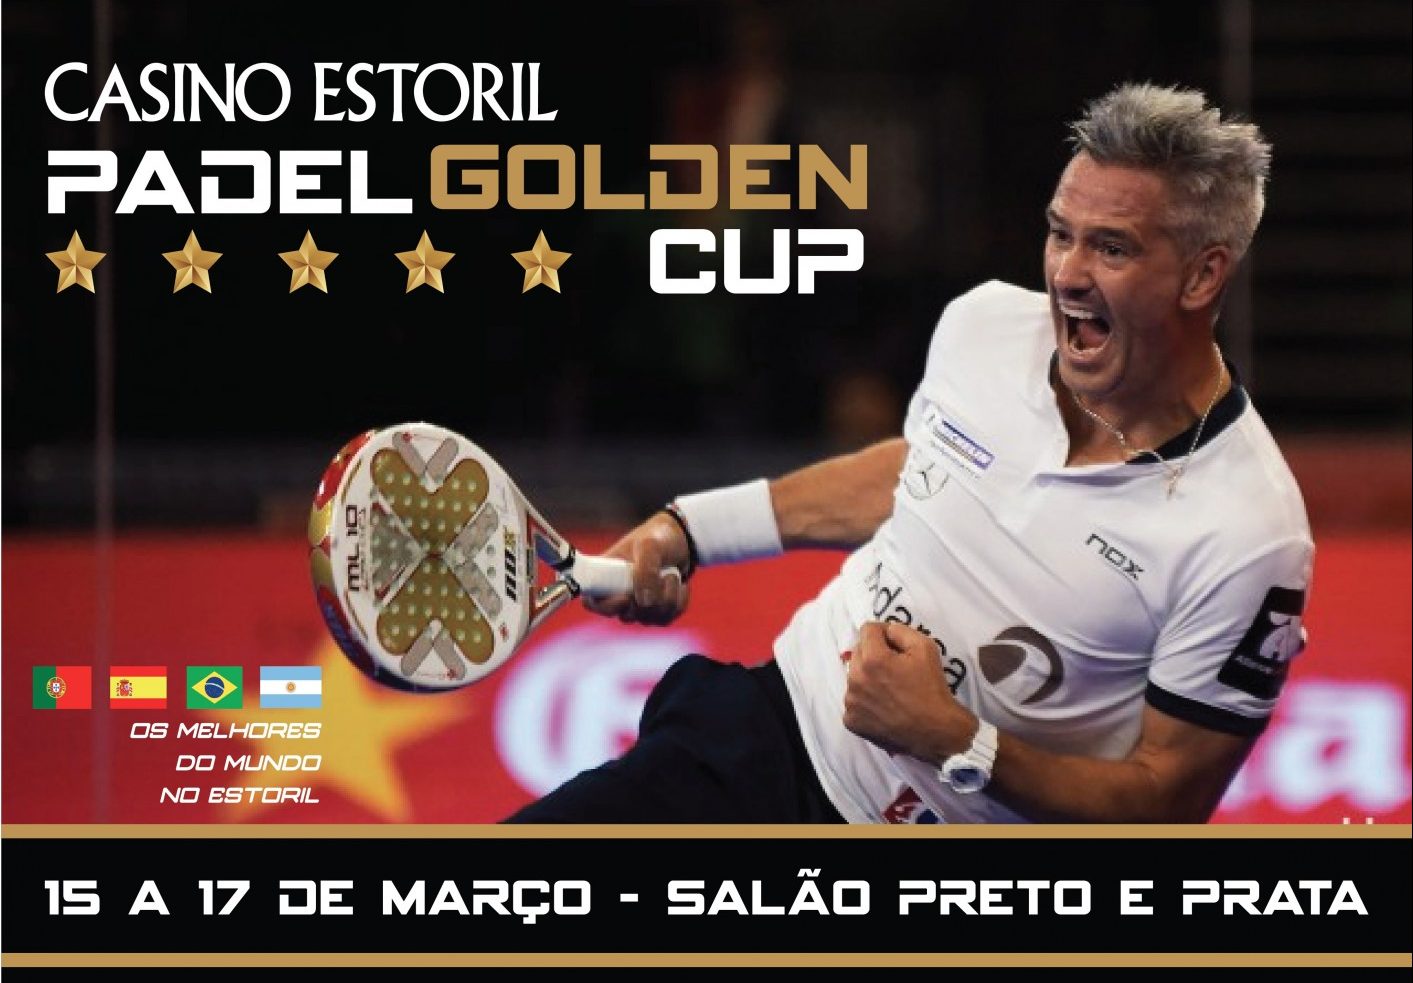 Le Padel Golden Cup serà el centre del món